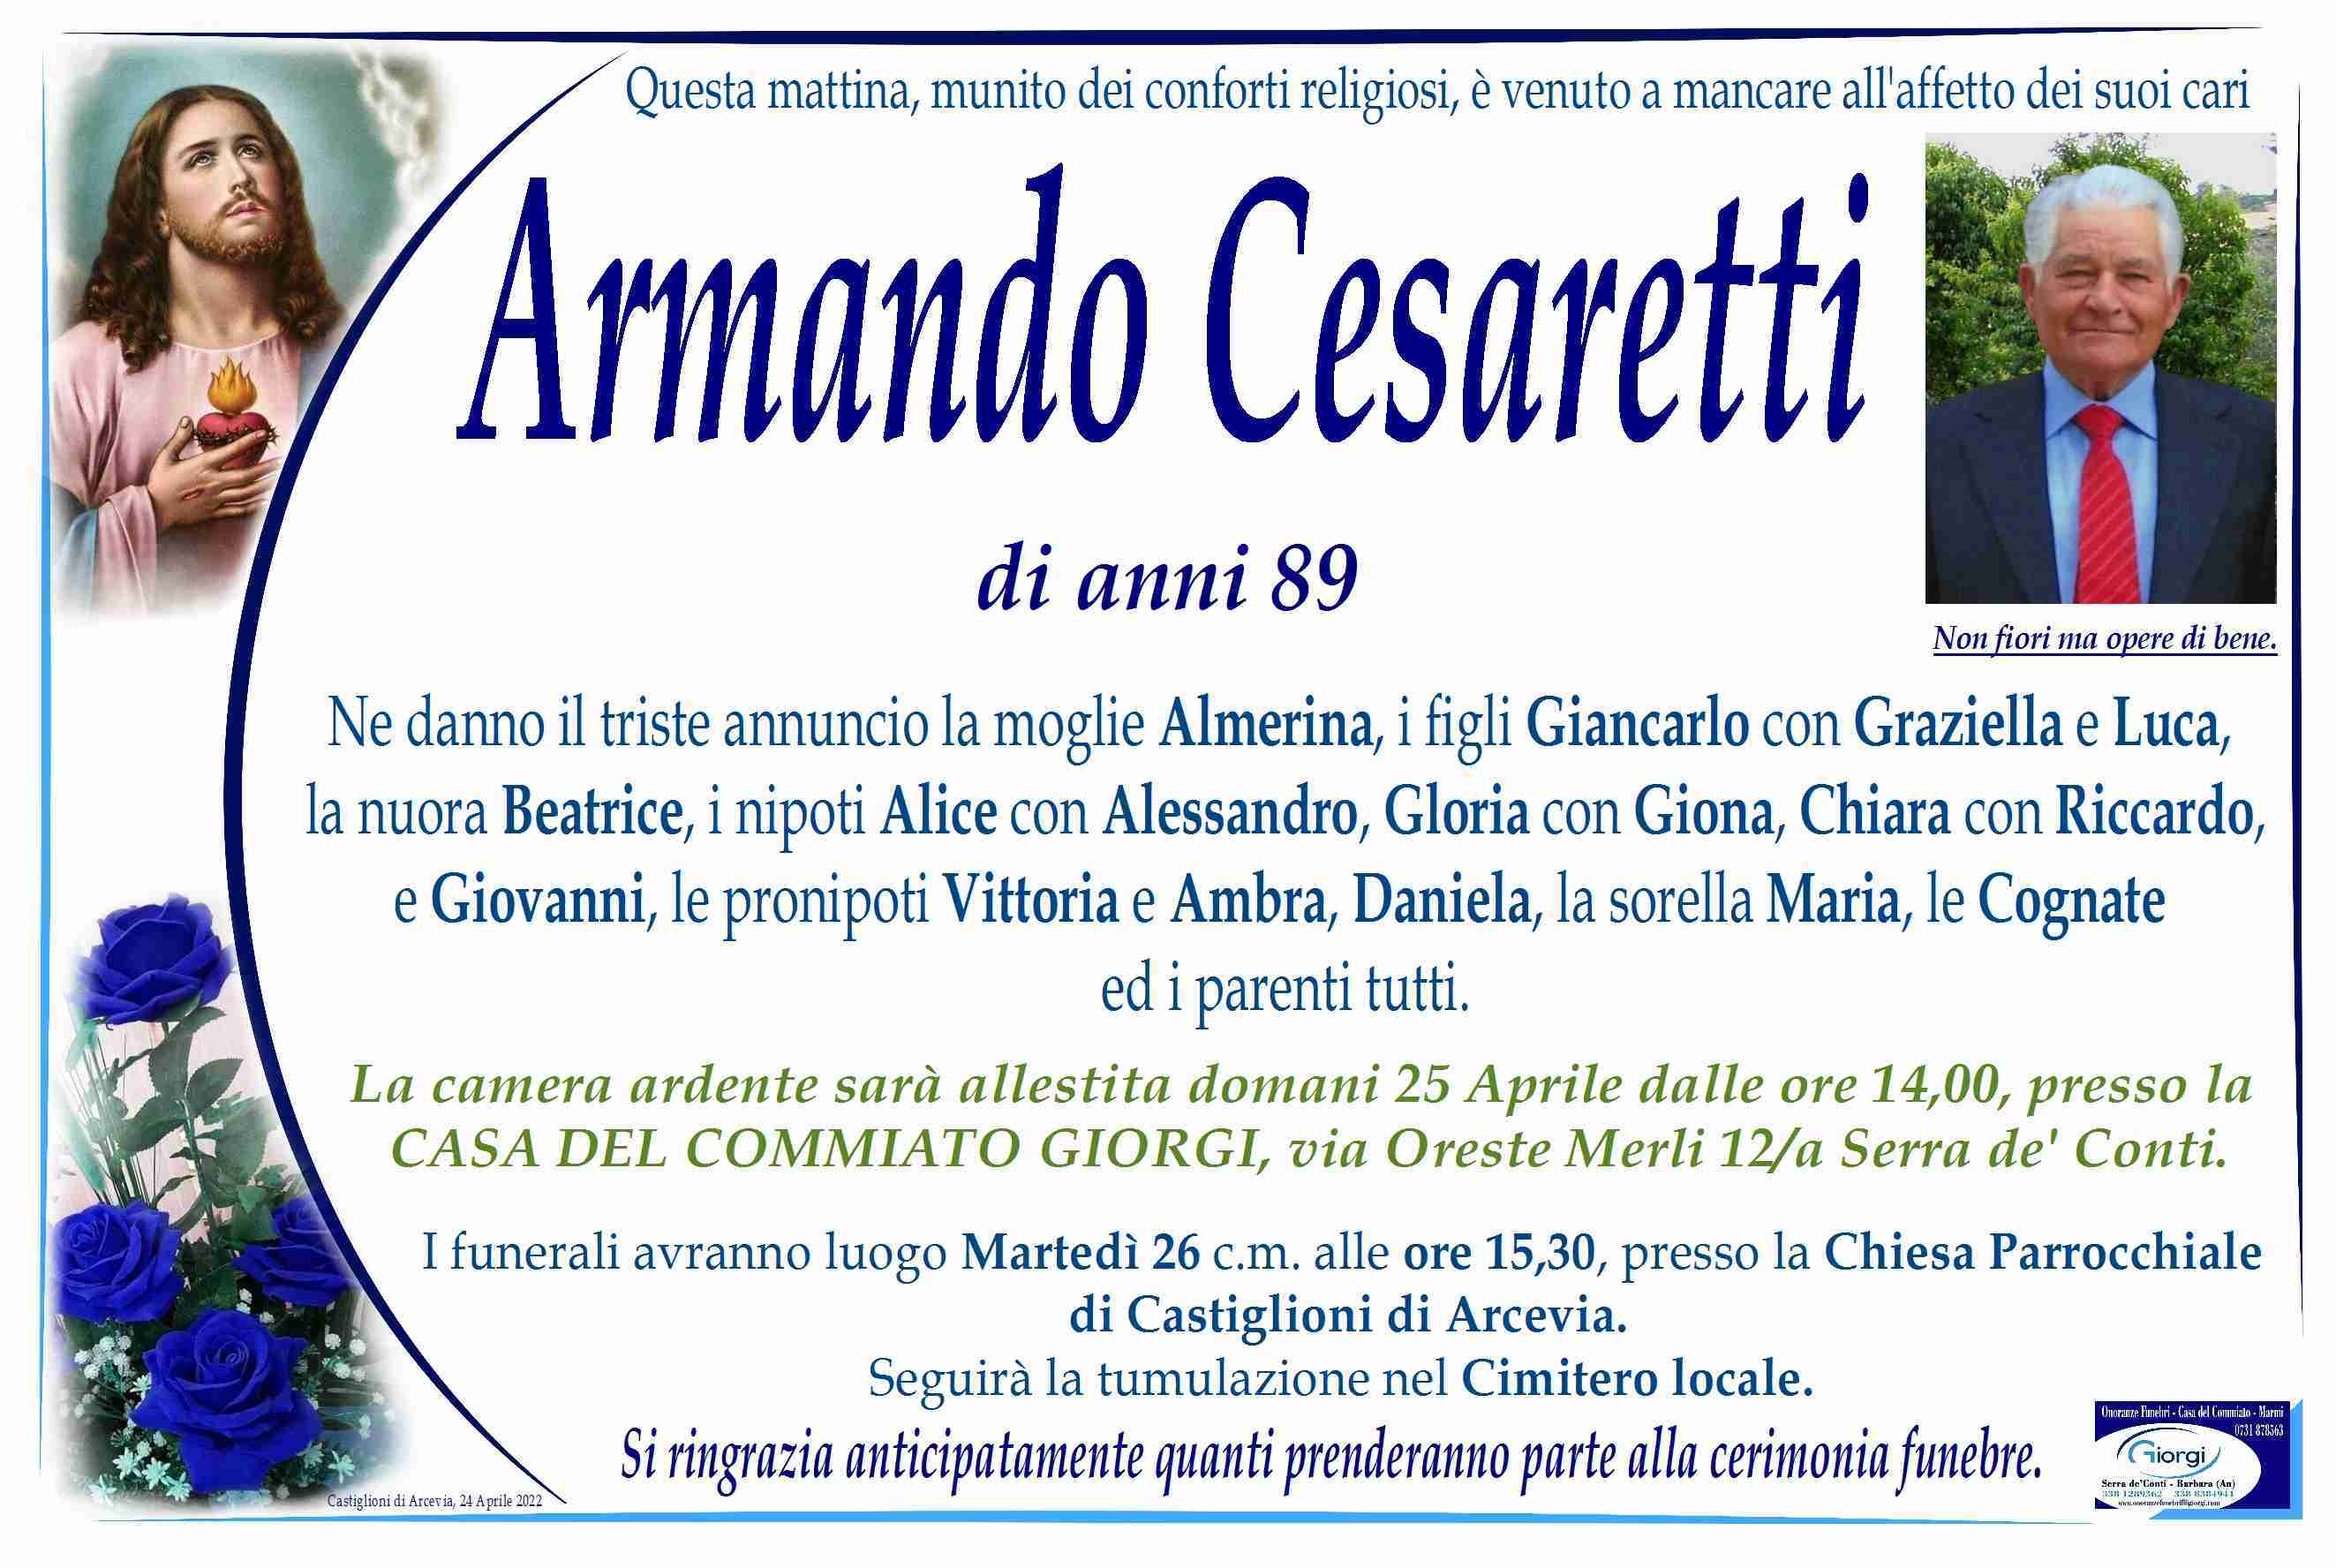 Armando Cesaretti